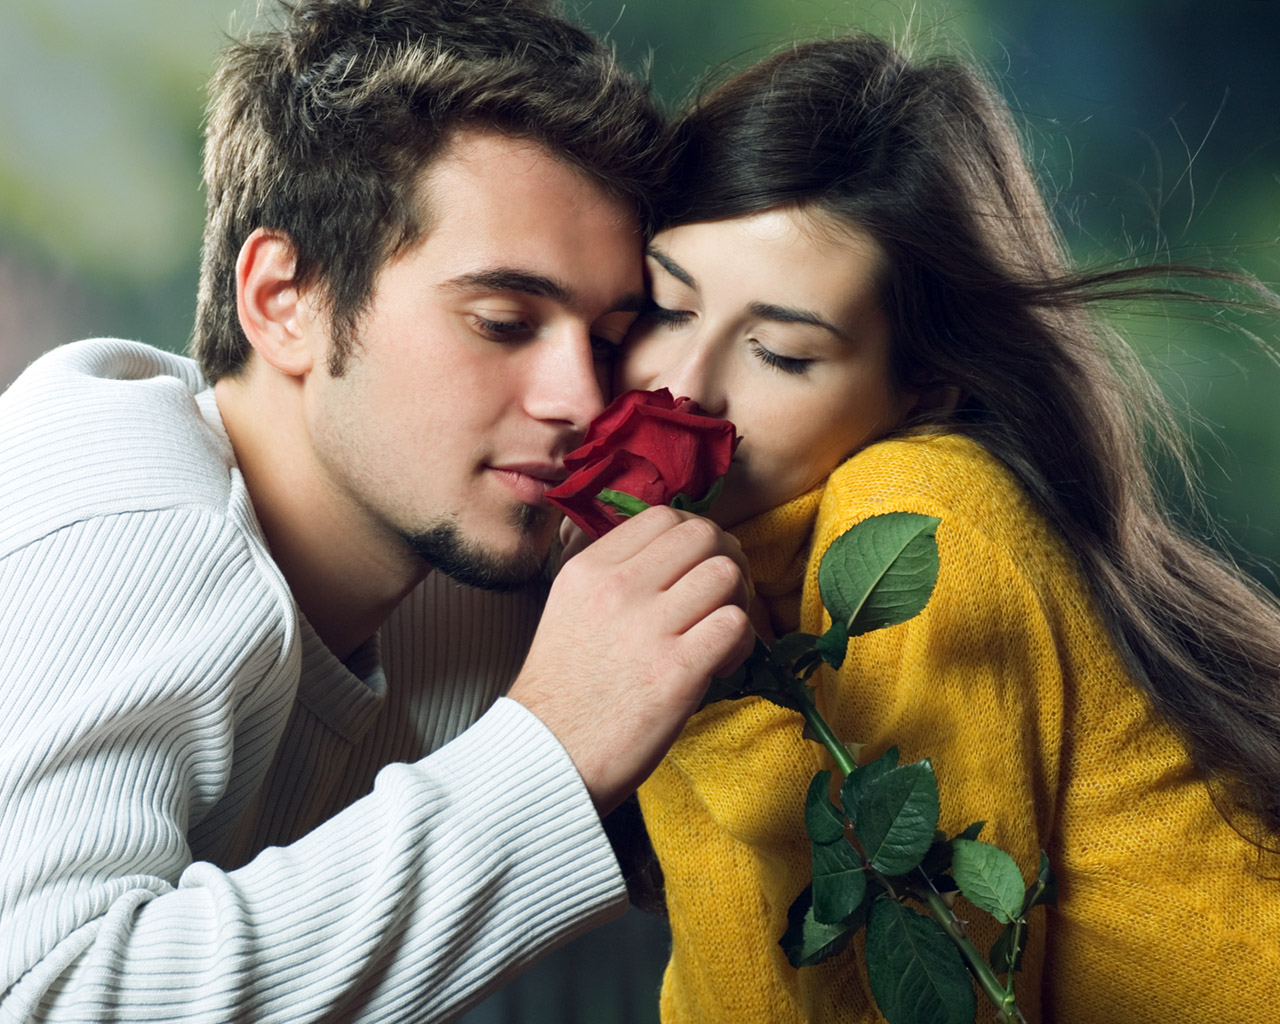 48 Download Romantic Kissing Wallpapers On WallpaperSafari